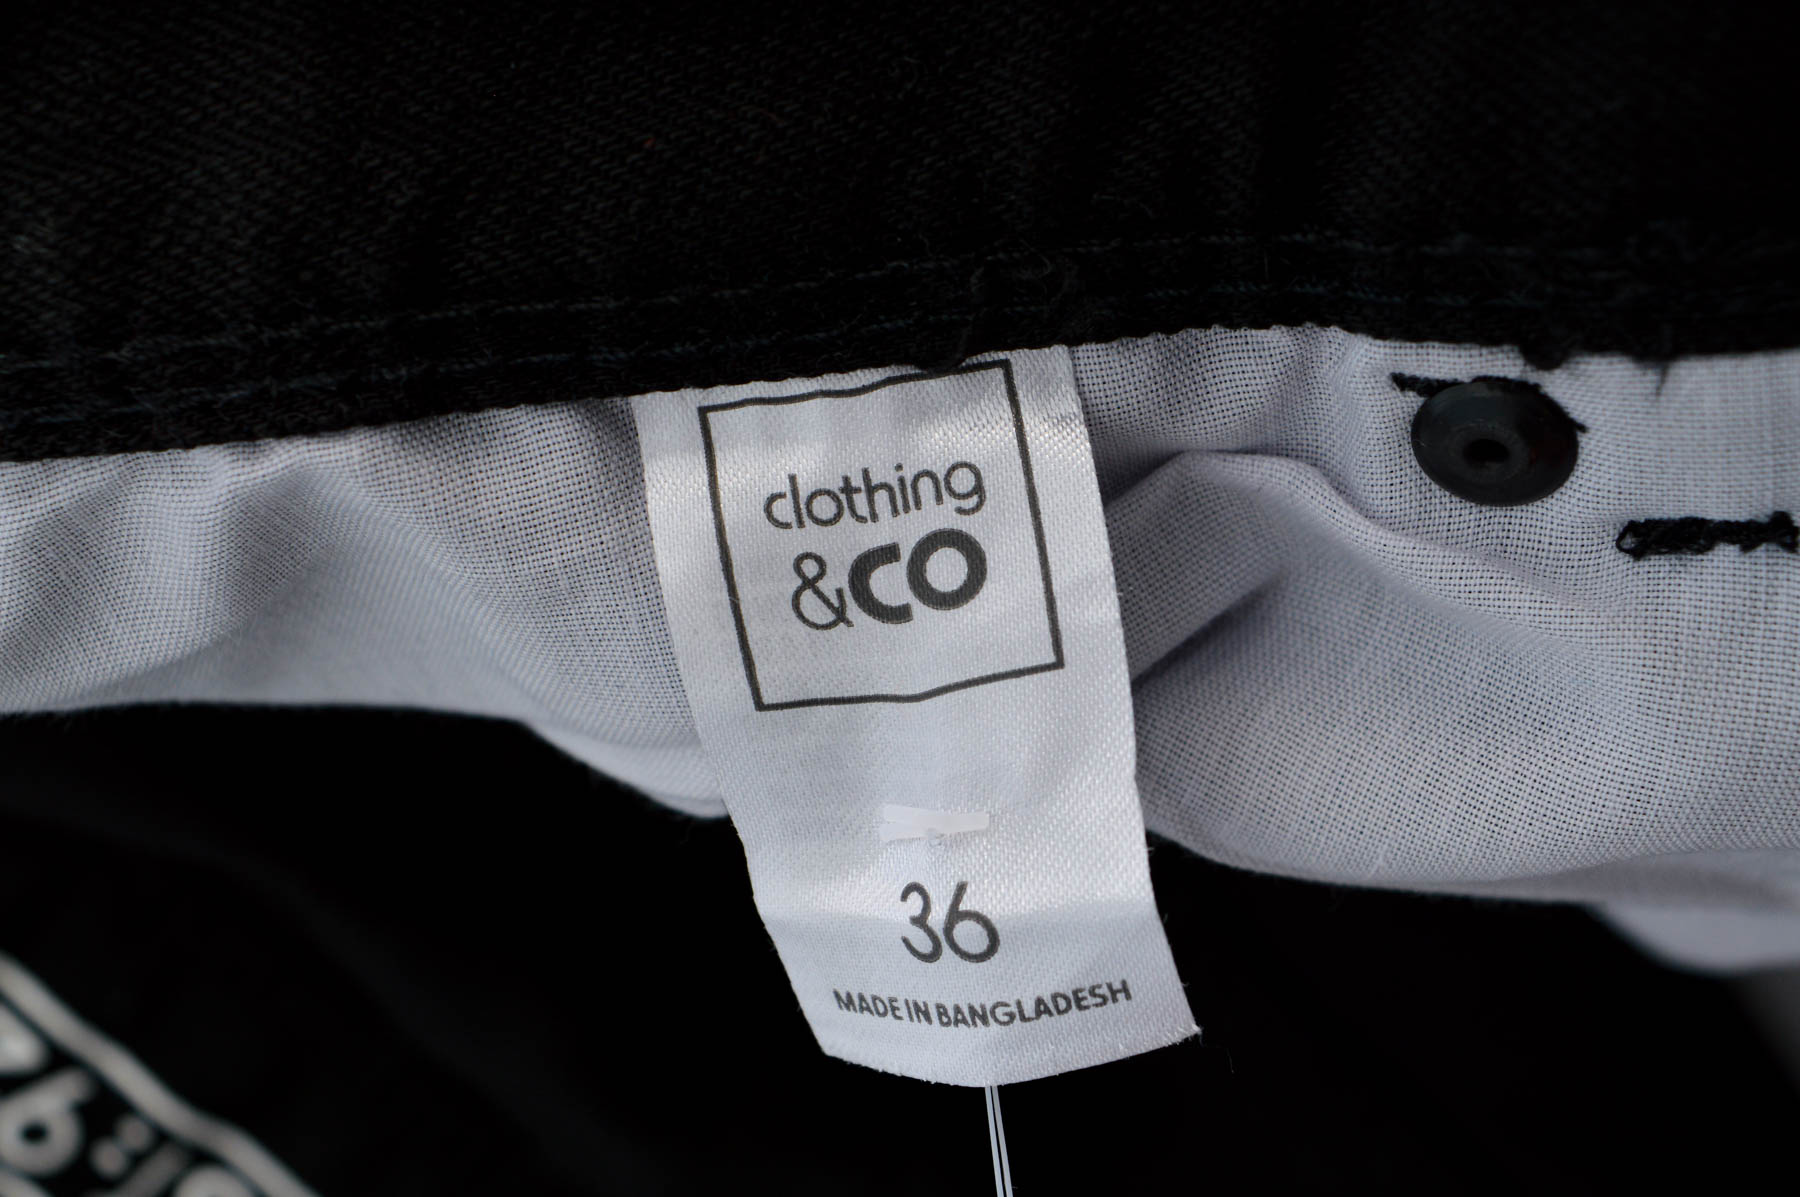 Мъжки дънки - Clothing & CO - 2